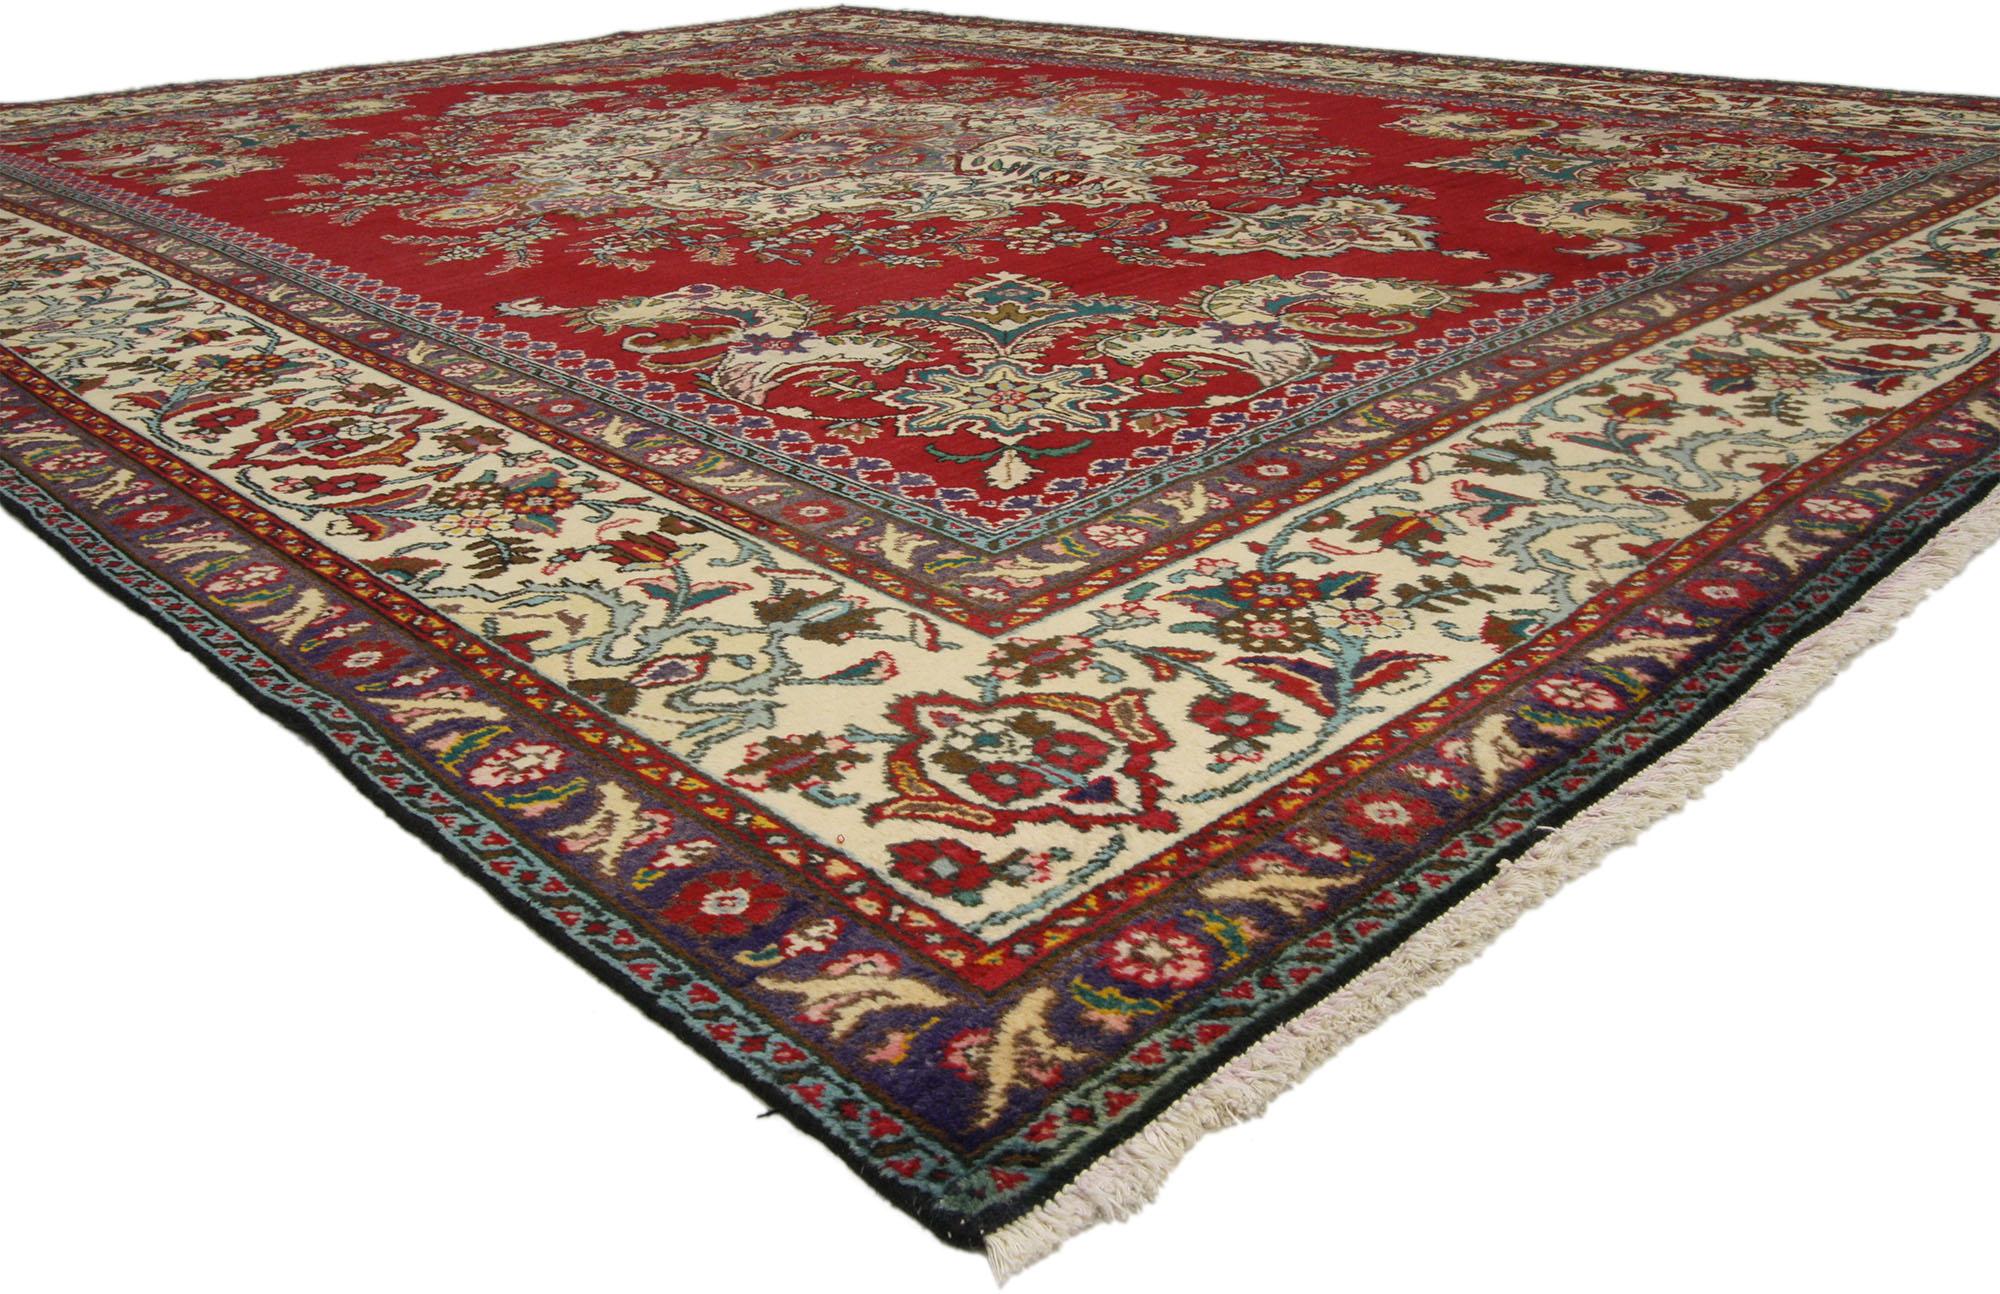 75766 Tapis Persan Vintage Tabriz de style colonial et fédéral traditionnel. De l'élégance décontractée à la fraîcheur et à l'élégance formelle, appréciez le raffinement de ce tapis vintage persan Tabriz en laine nouée à la main. Ses couleurs vives